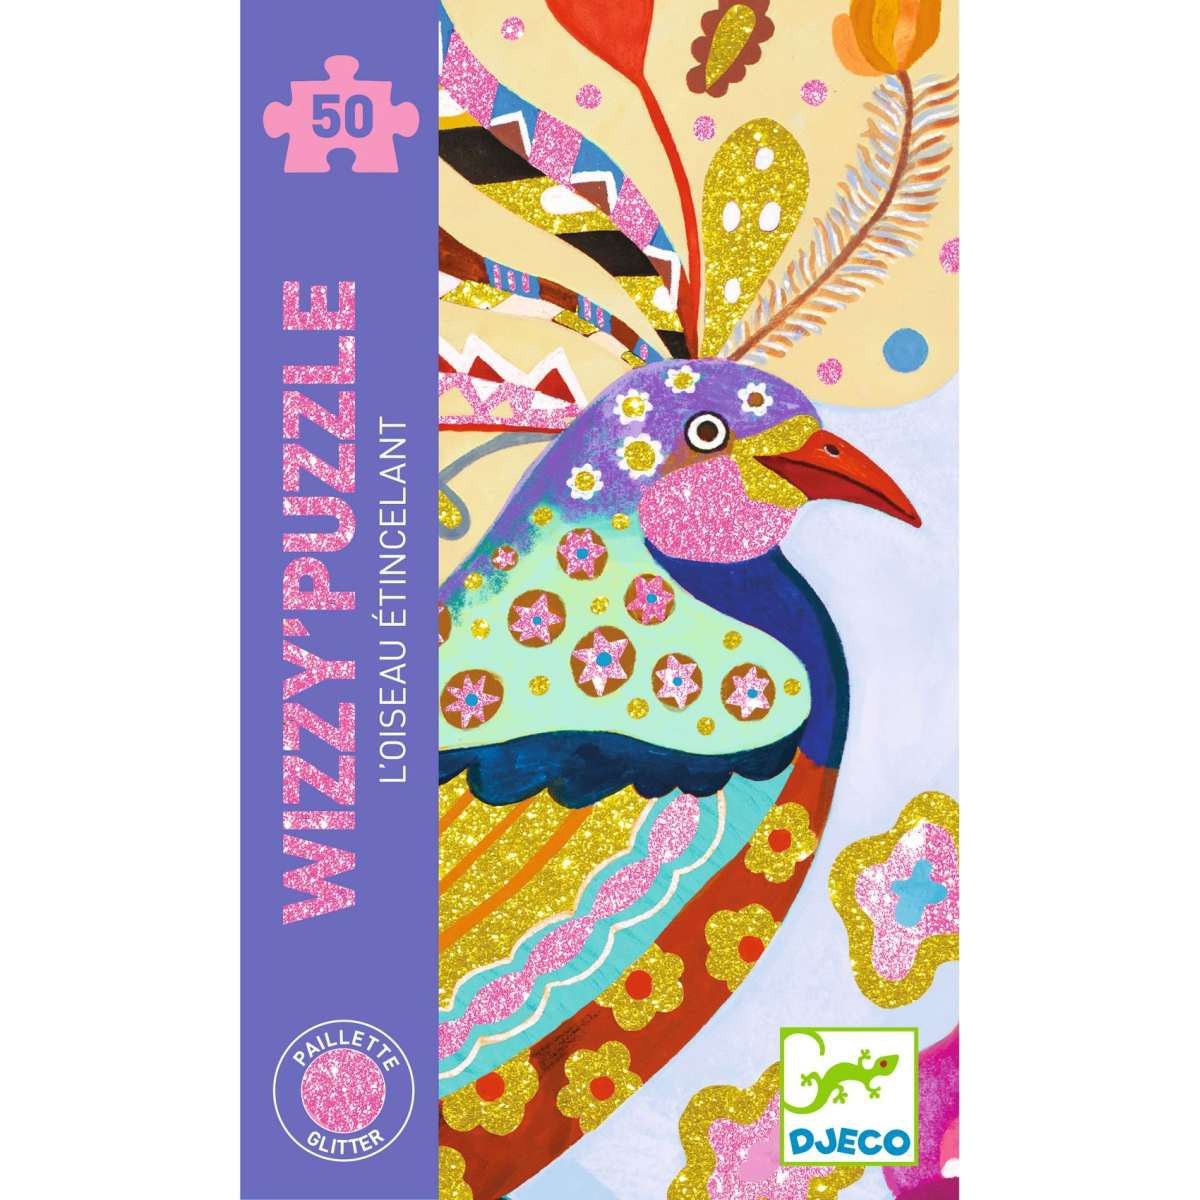 Wizzy'Puzzle von Djeco  Ein Puzzle mit 50 Teilen, um der Puzzle-Tradition neuen Schwung zu geben!  Mit Glitzerfarben bedruckt, die glitzern und funkeln!